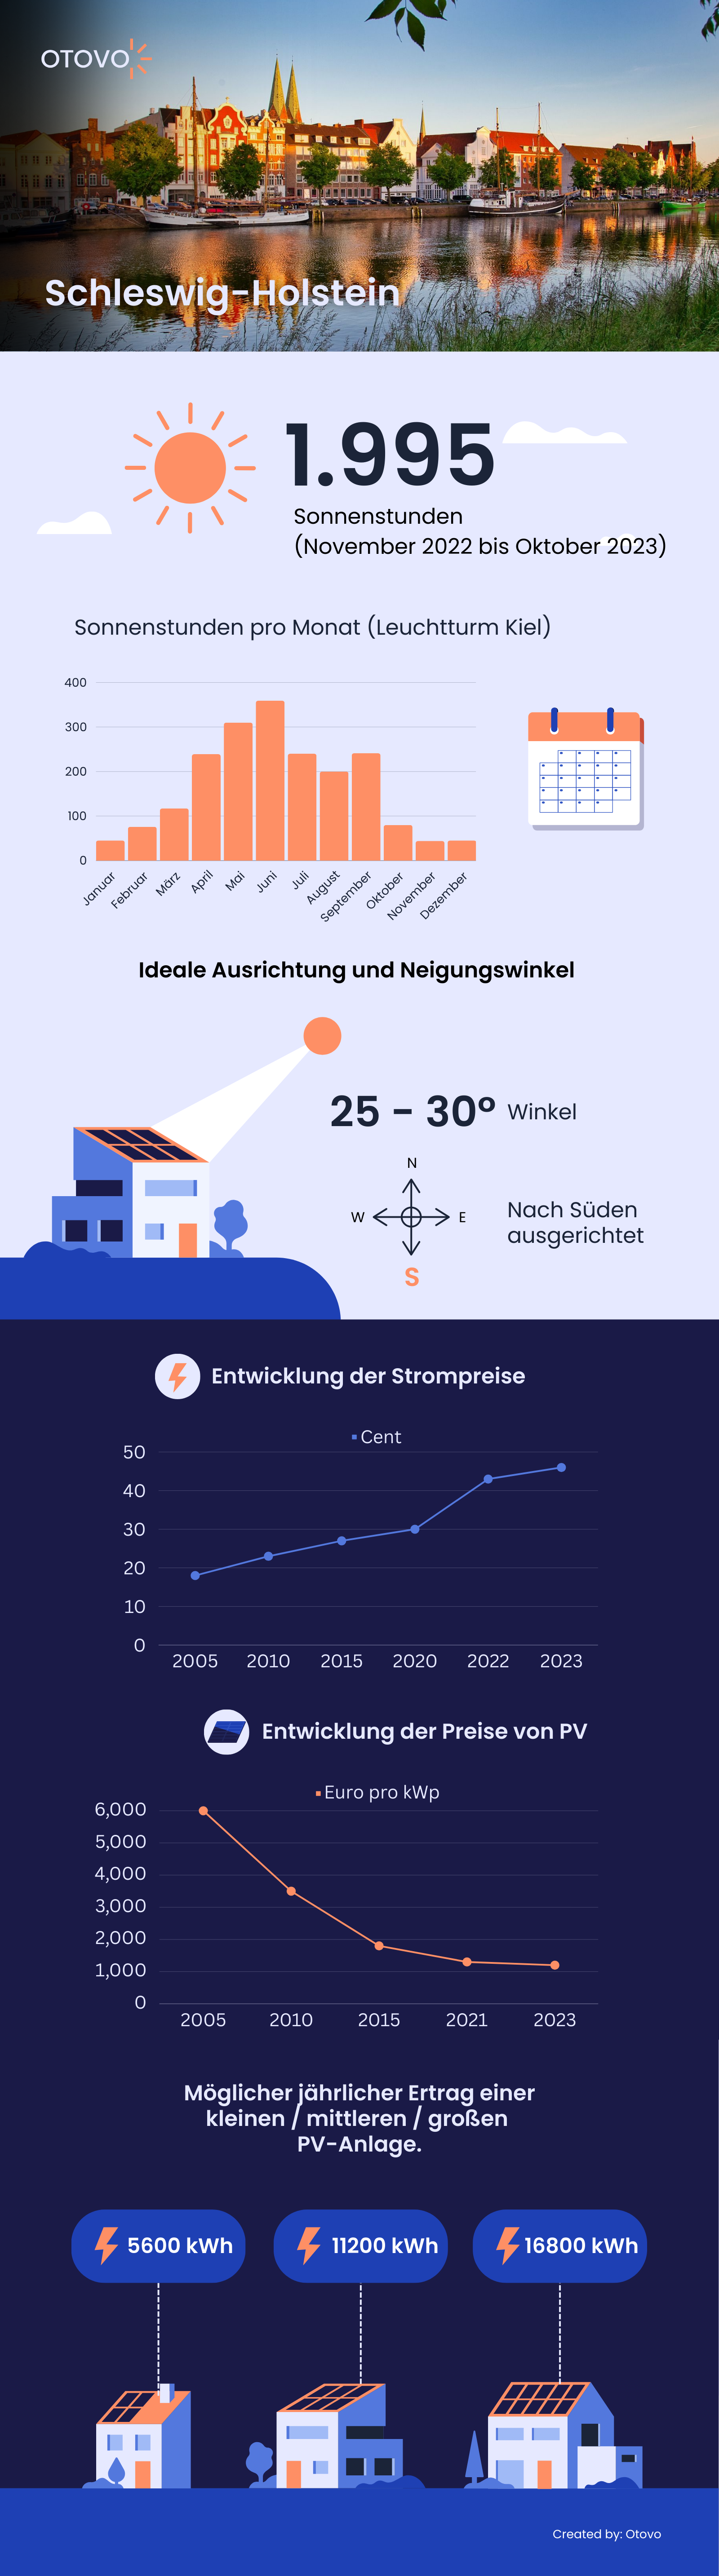 Infografik zu Solaranlagen in Schleswig-Holstein